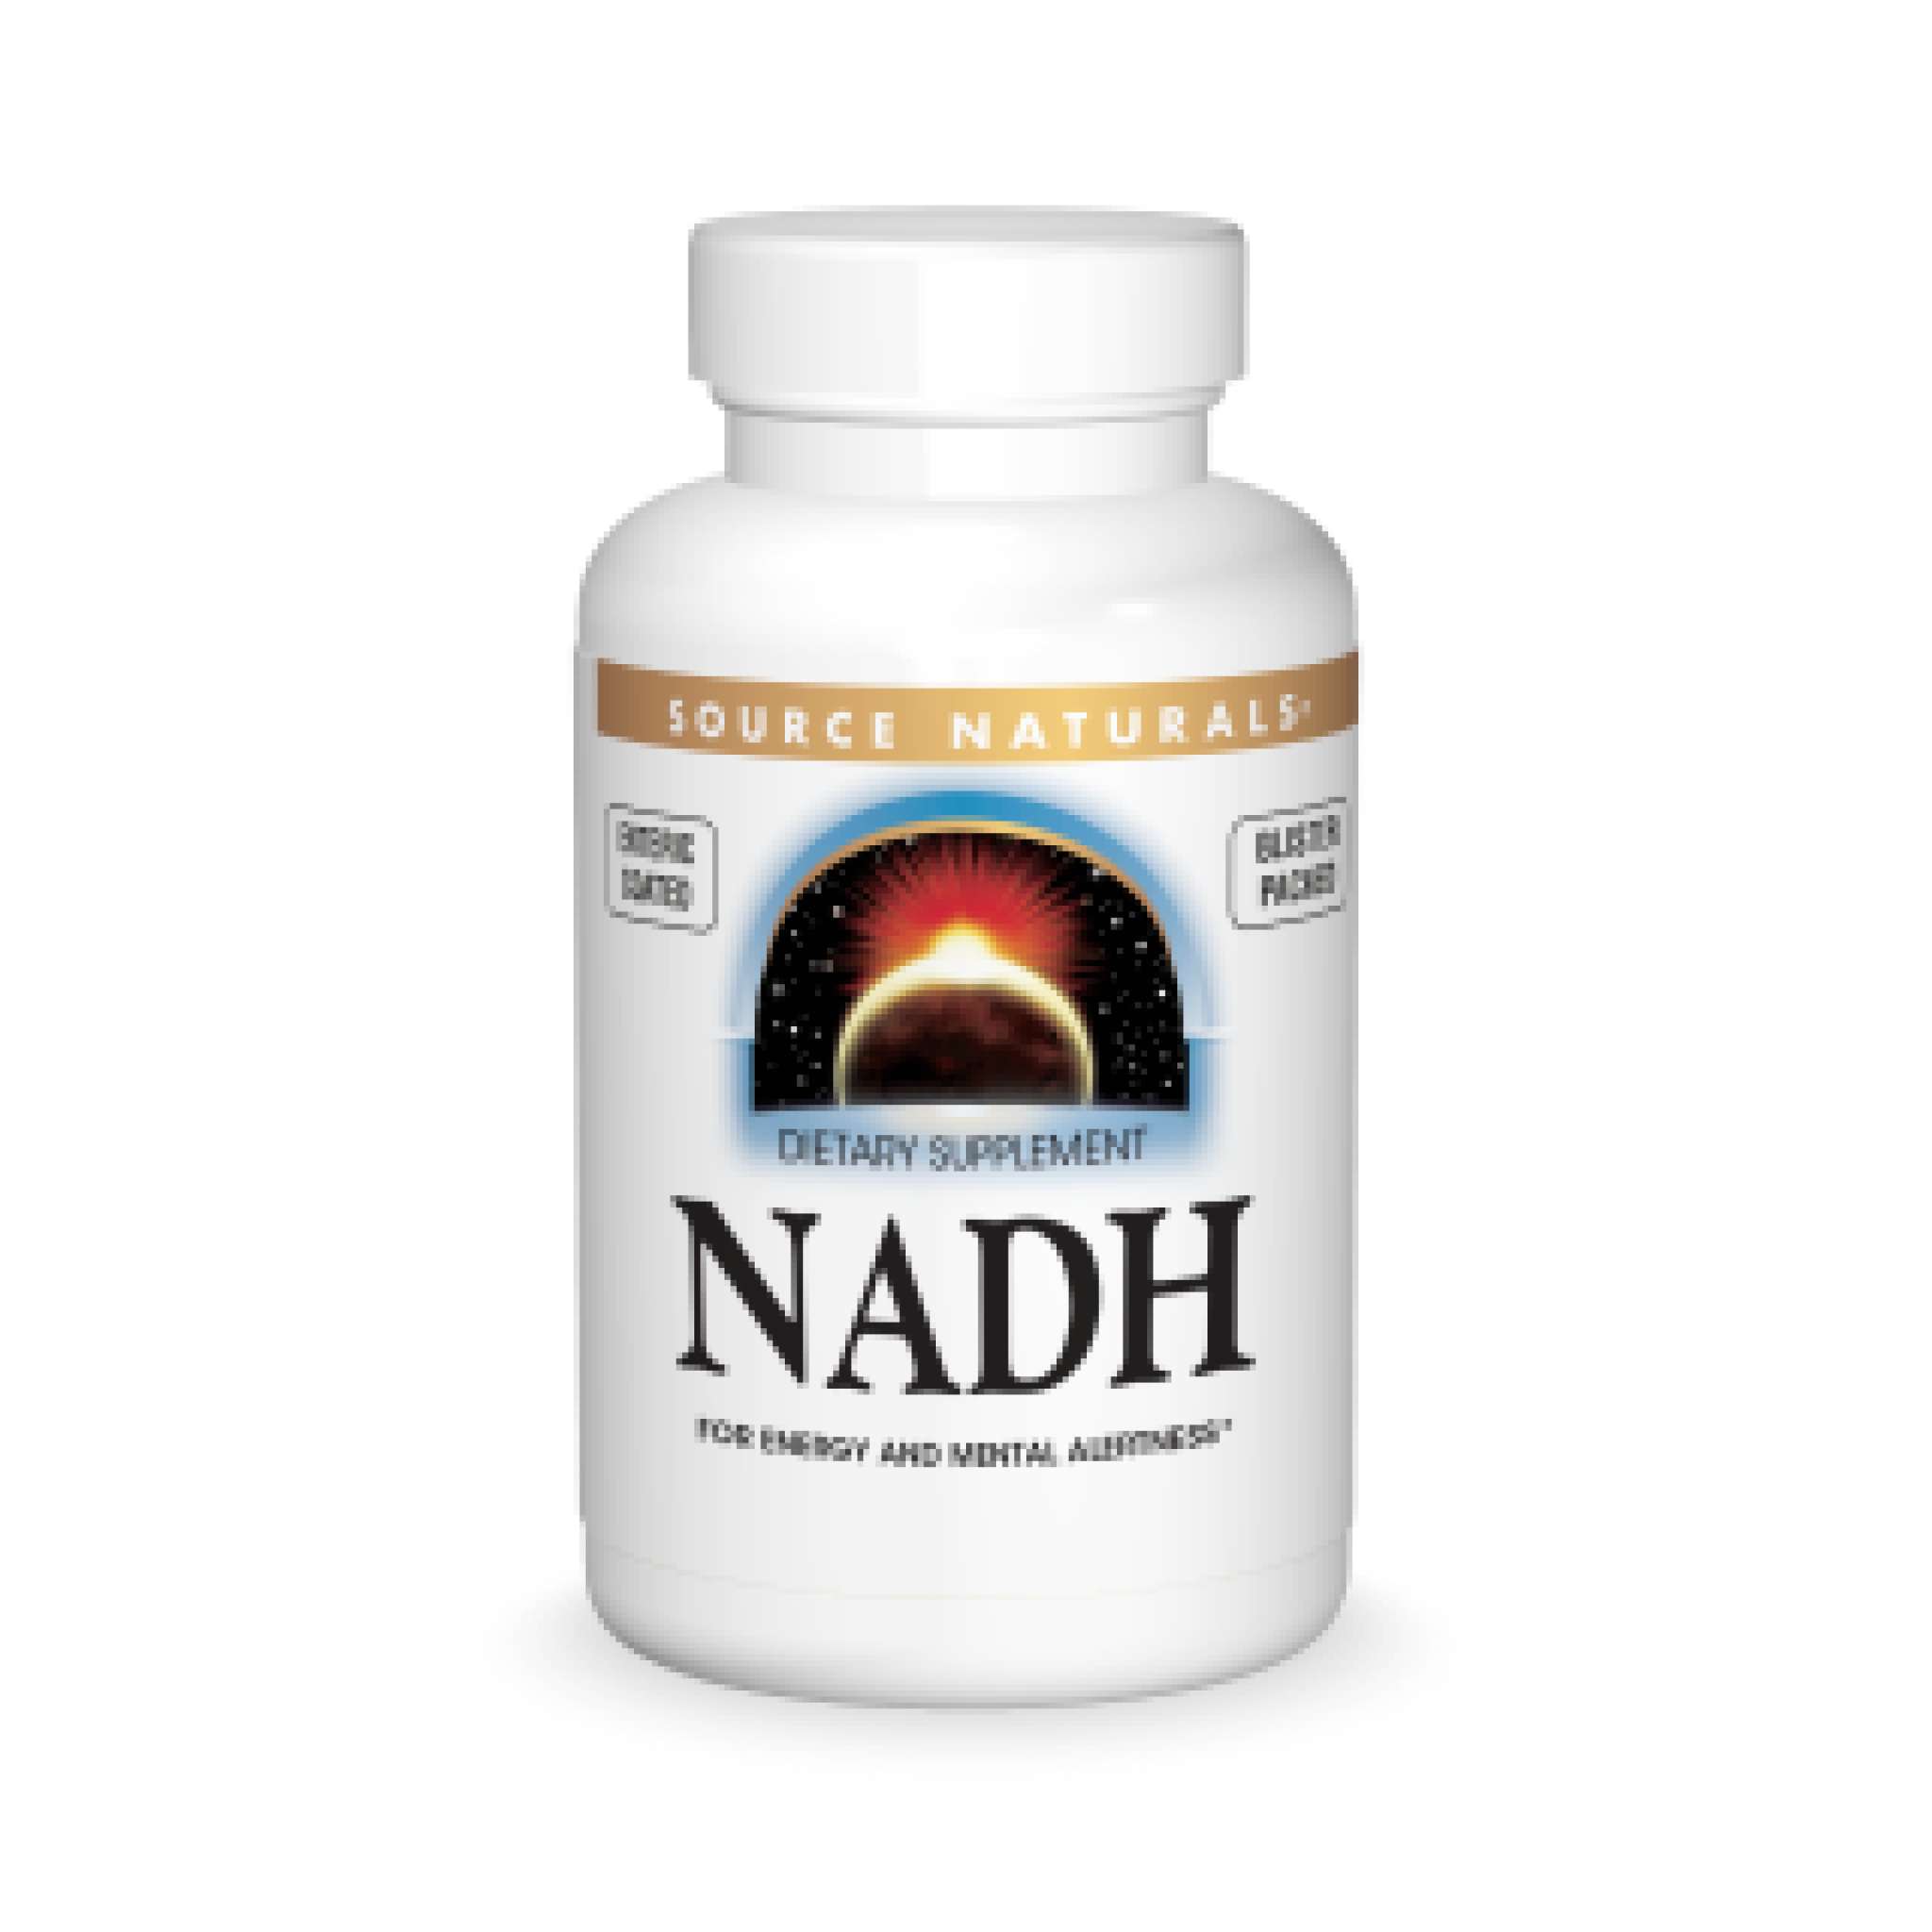 Source Naturals - Nadh 5 mg